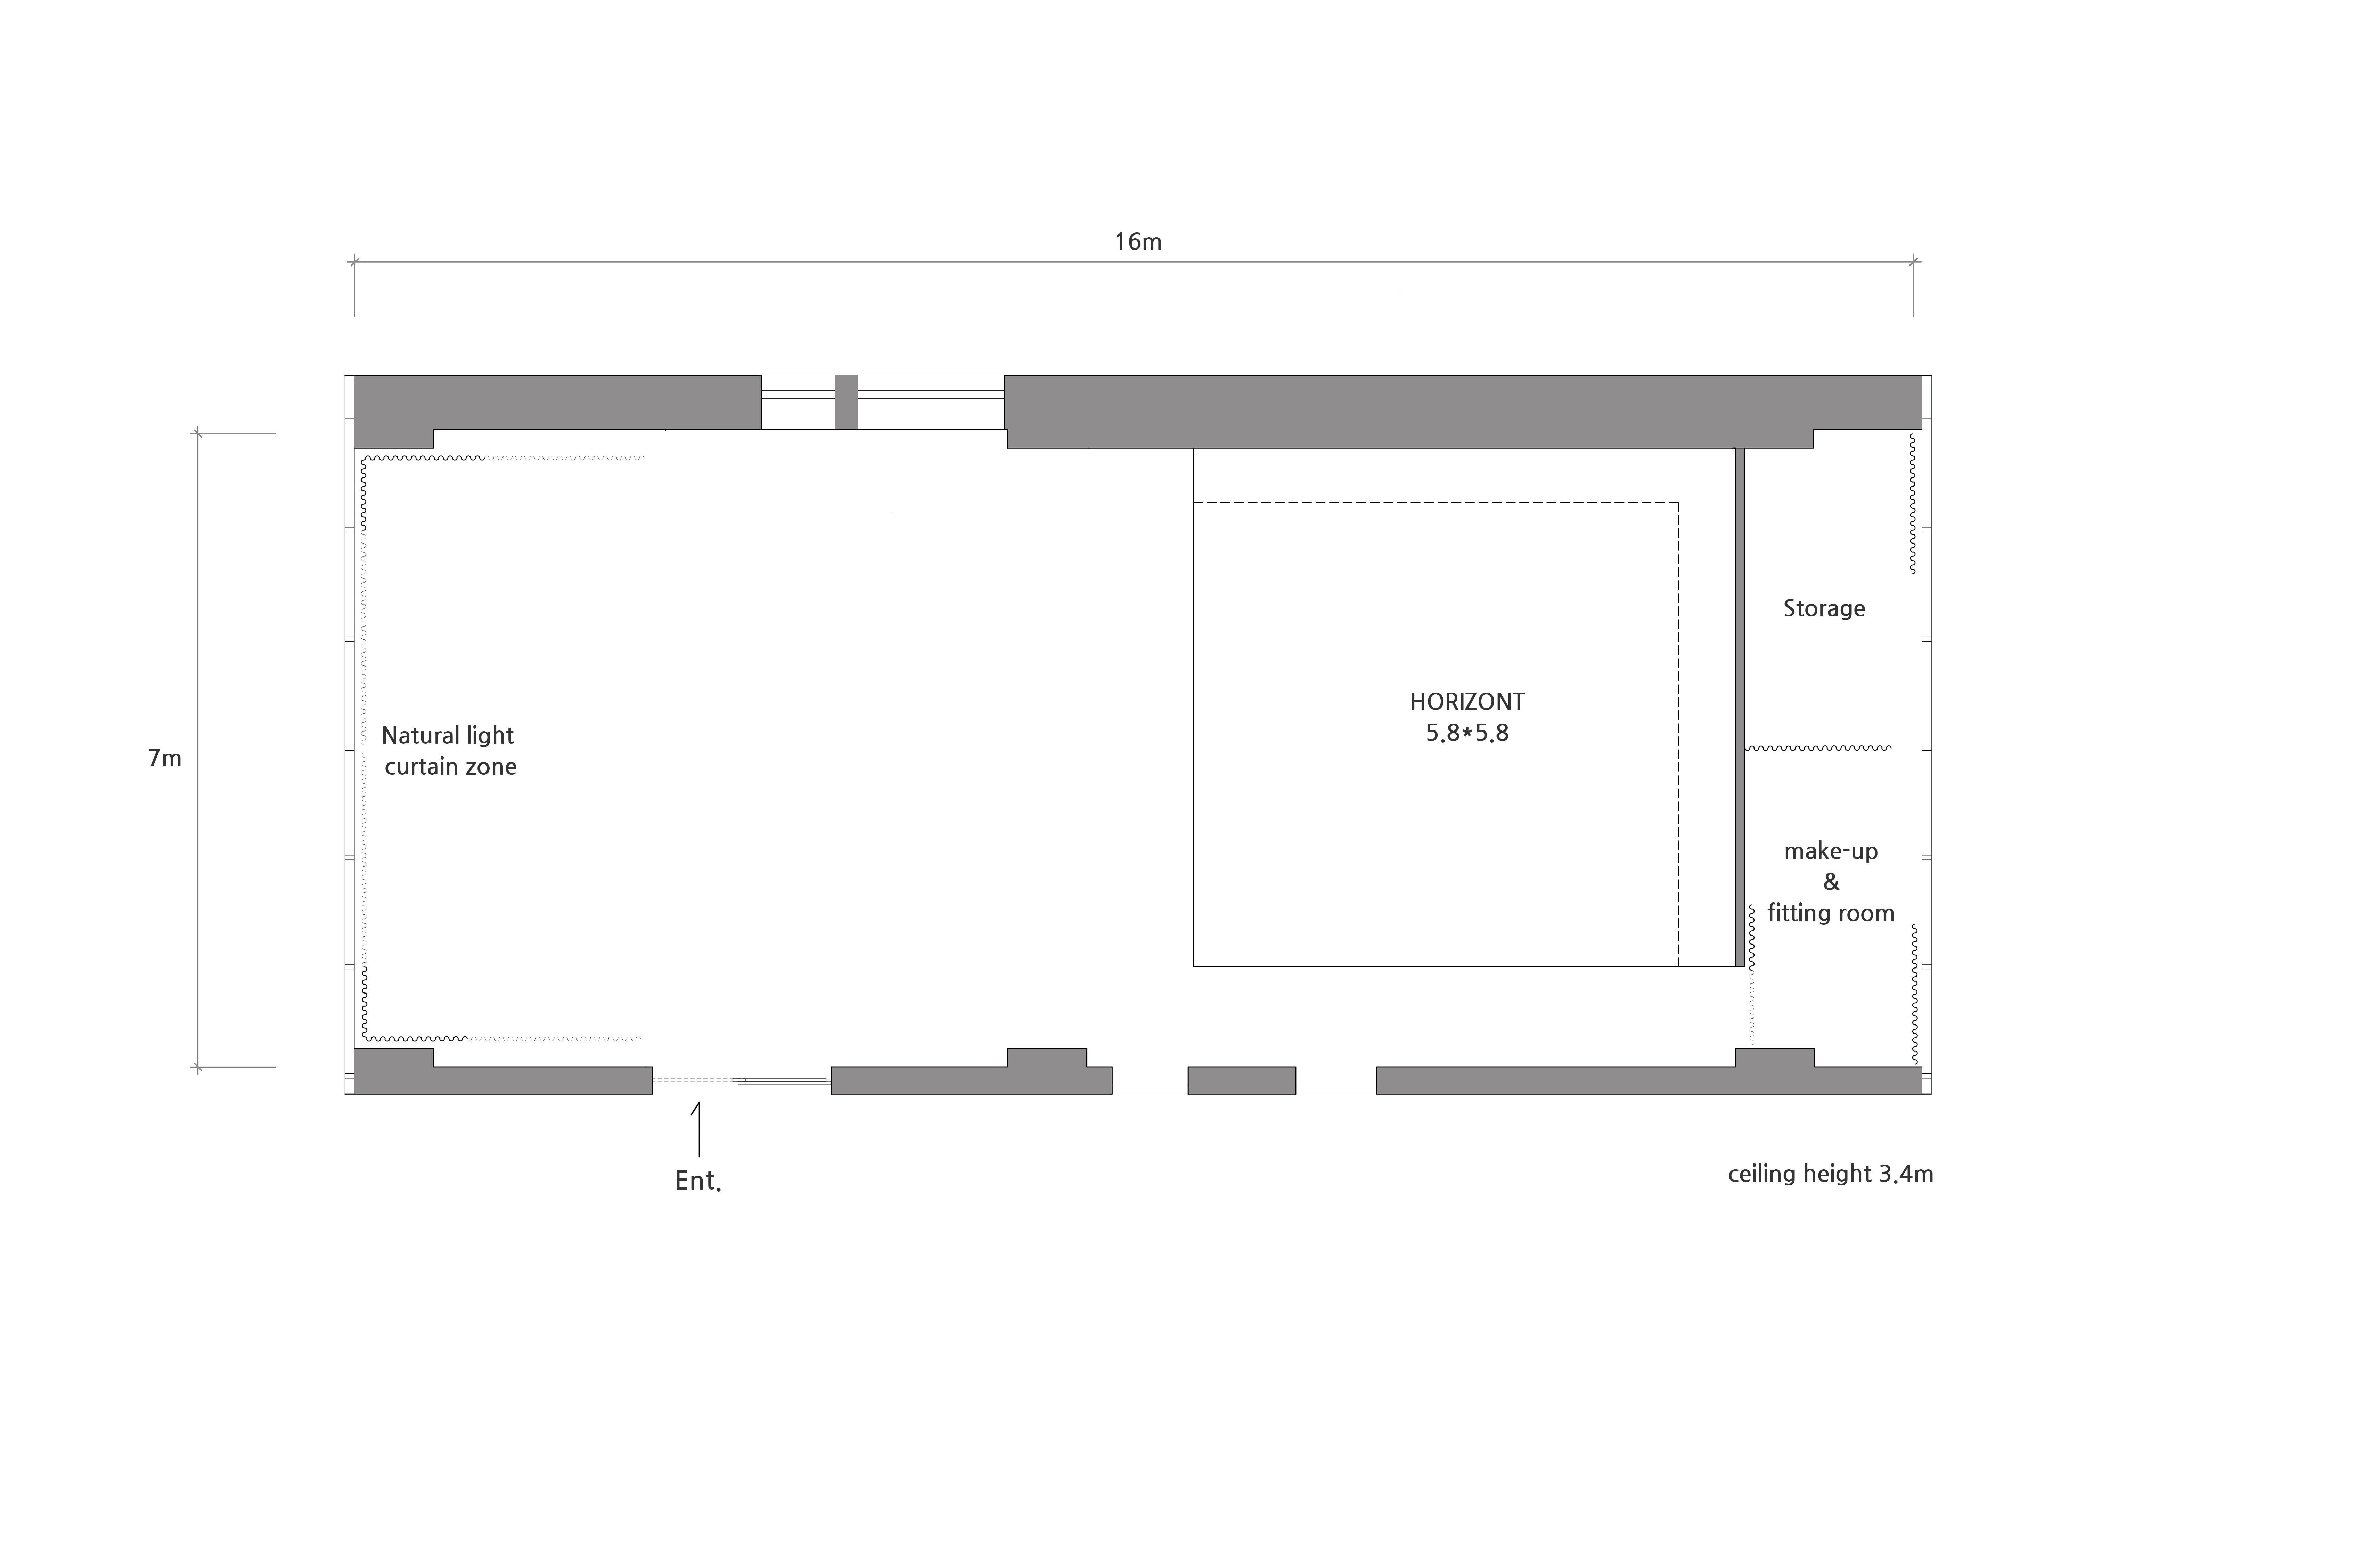 studio floor plan image